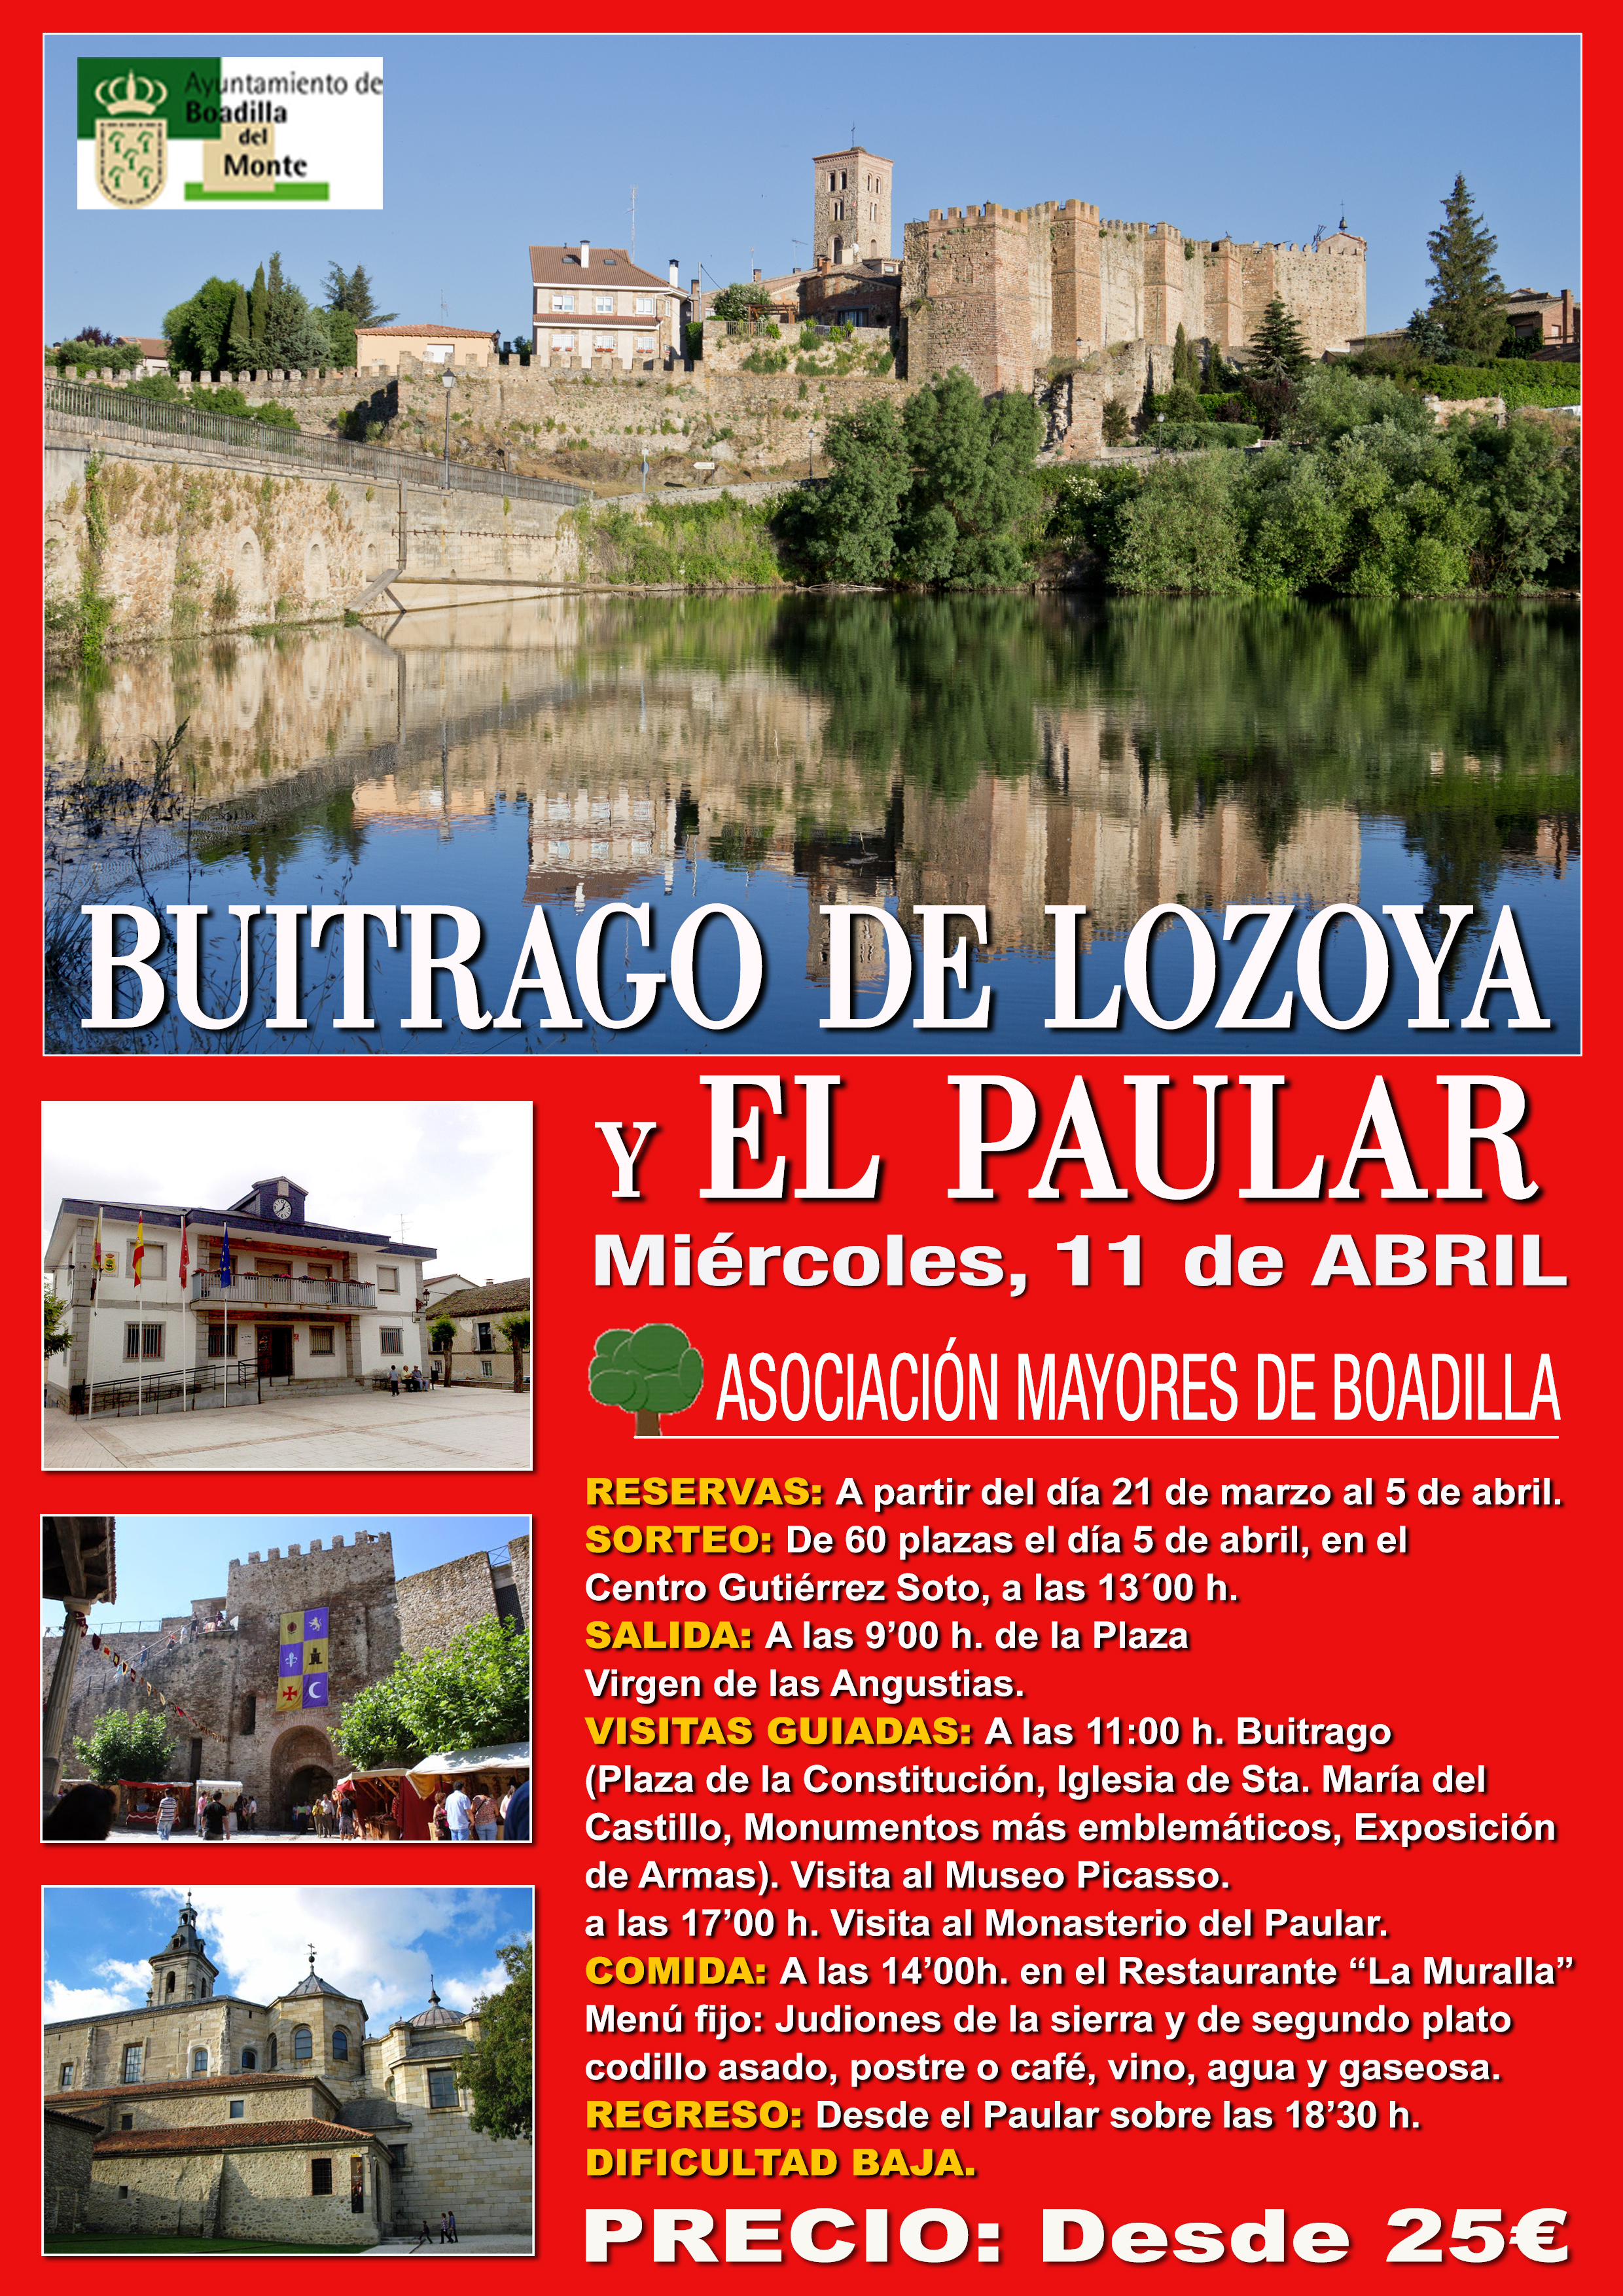 BUITRAGO DE LOZOYA Y EL PAULAR